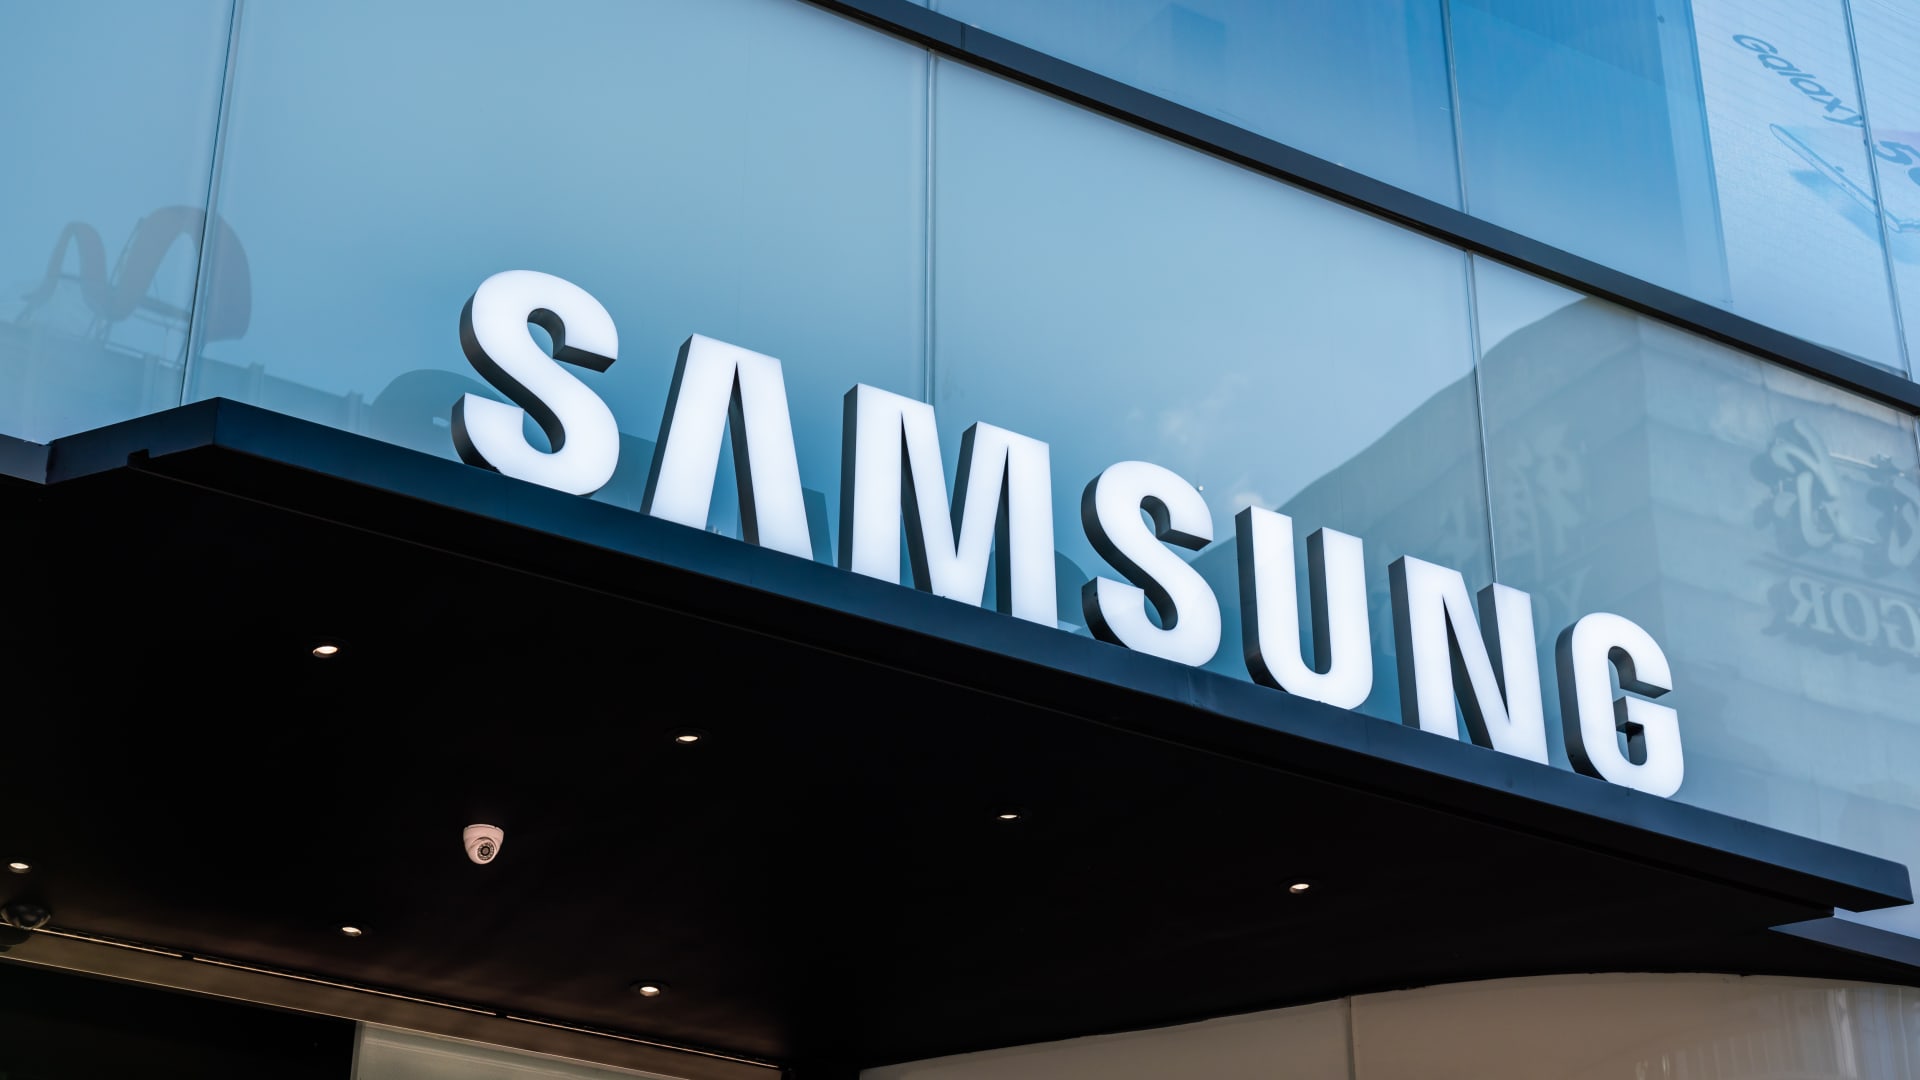 Samsung ottiene da NVIDIA un ordine da 752 milioni di dollari per chip di intelligenza artificiale